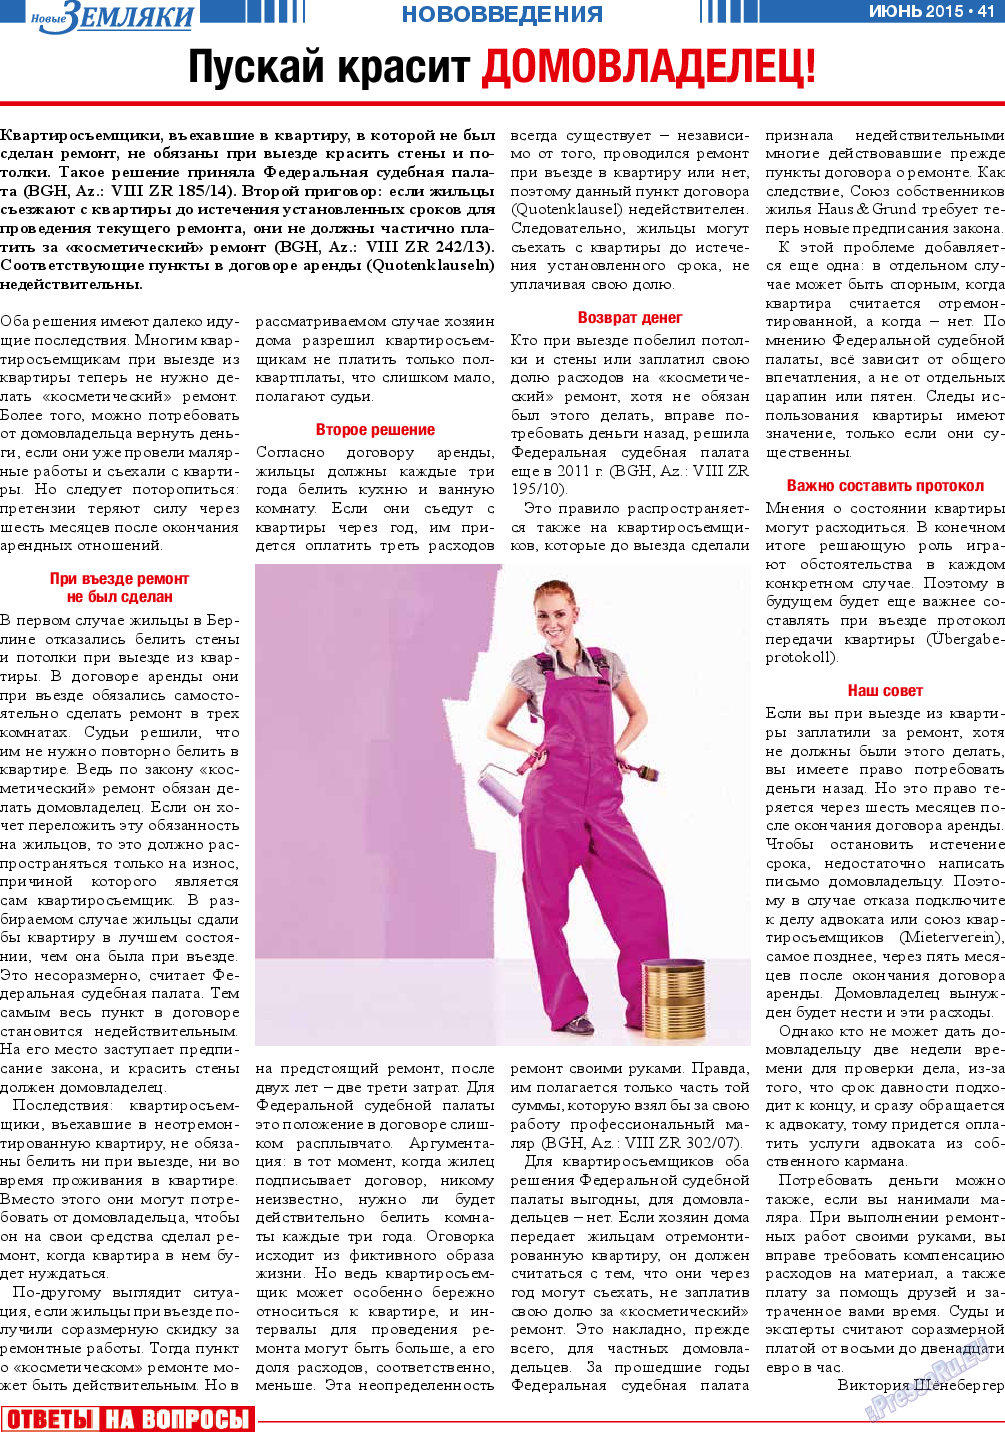 Новые Земляки, газета. 2015 №6 стр.41